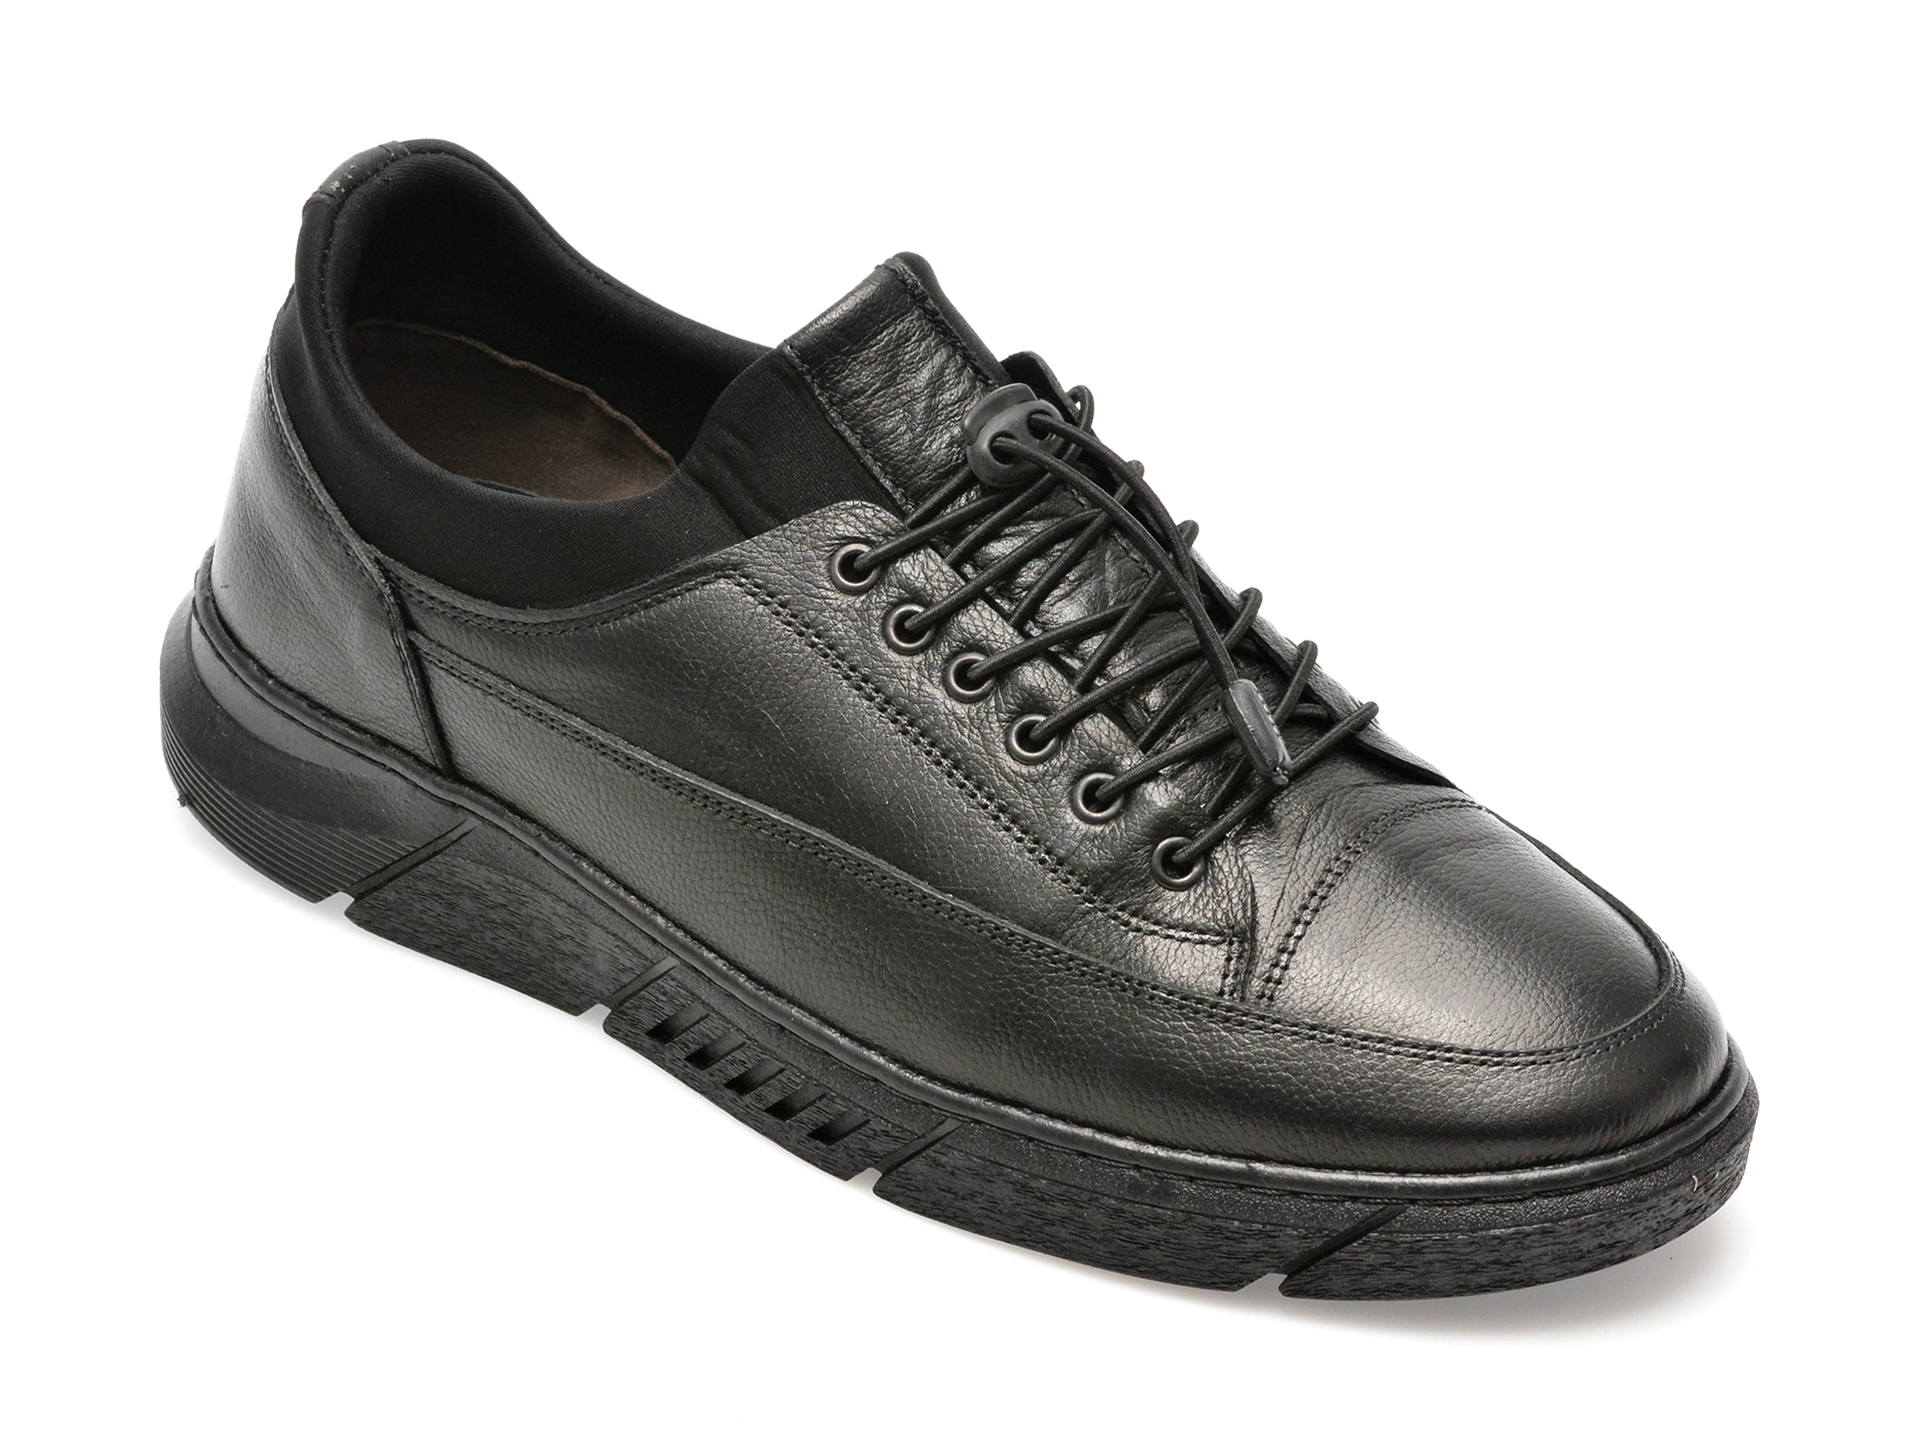 Pantofi AXXELLL negri, ER802, din piele naturala /barbati/pantofi